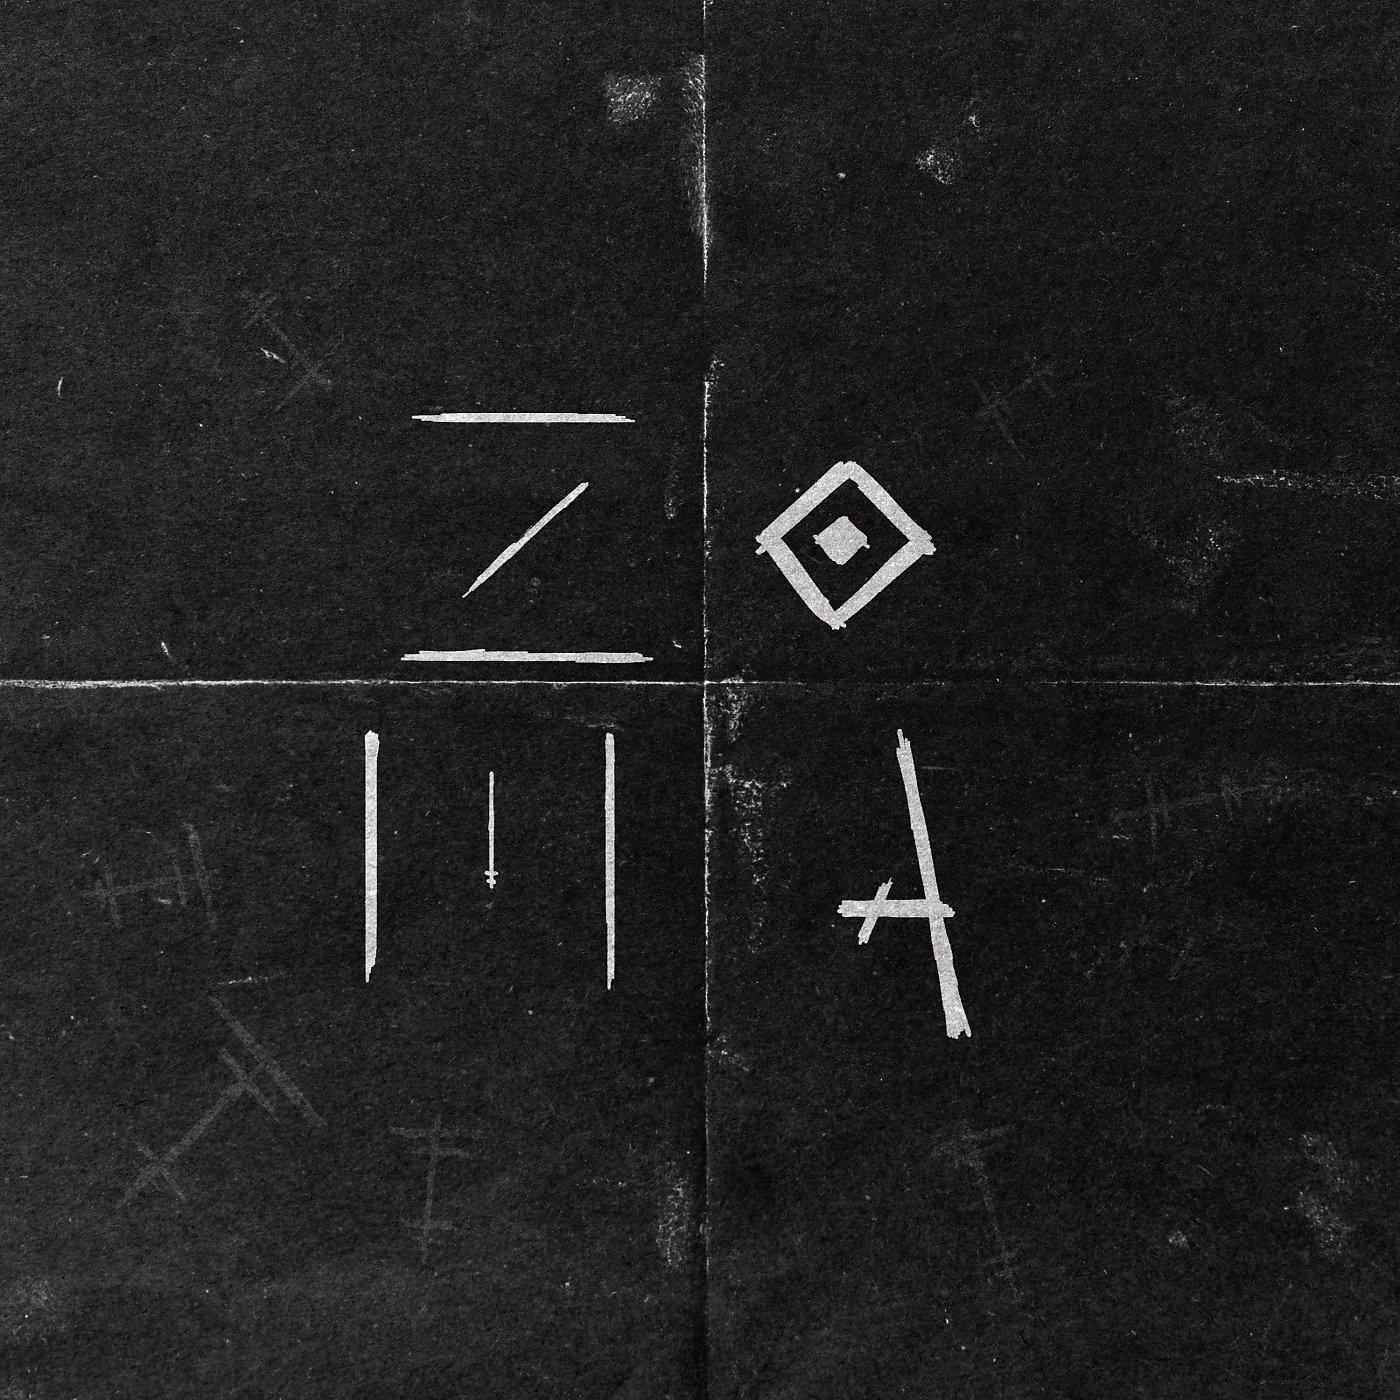 Постер альбома Zoma